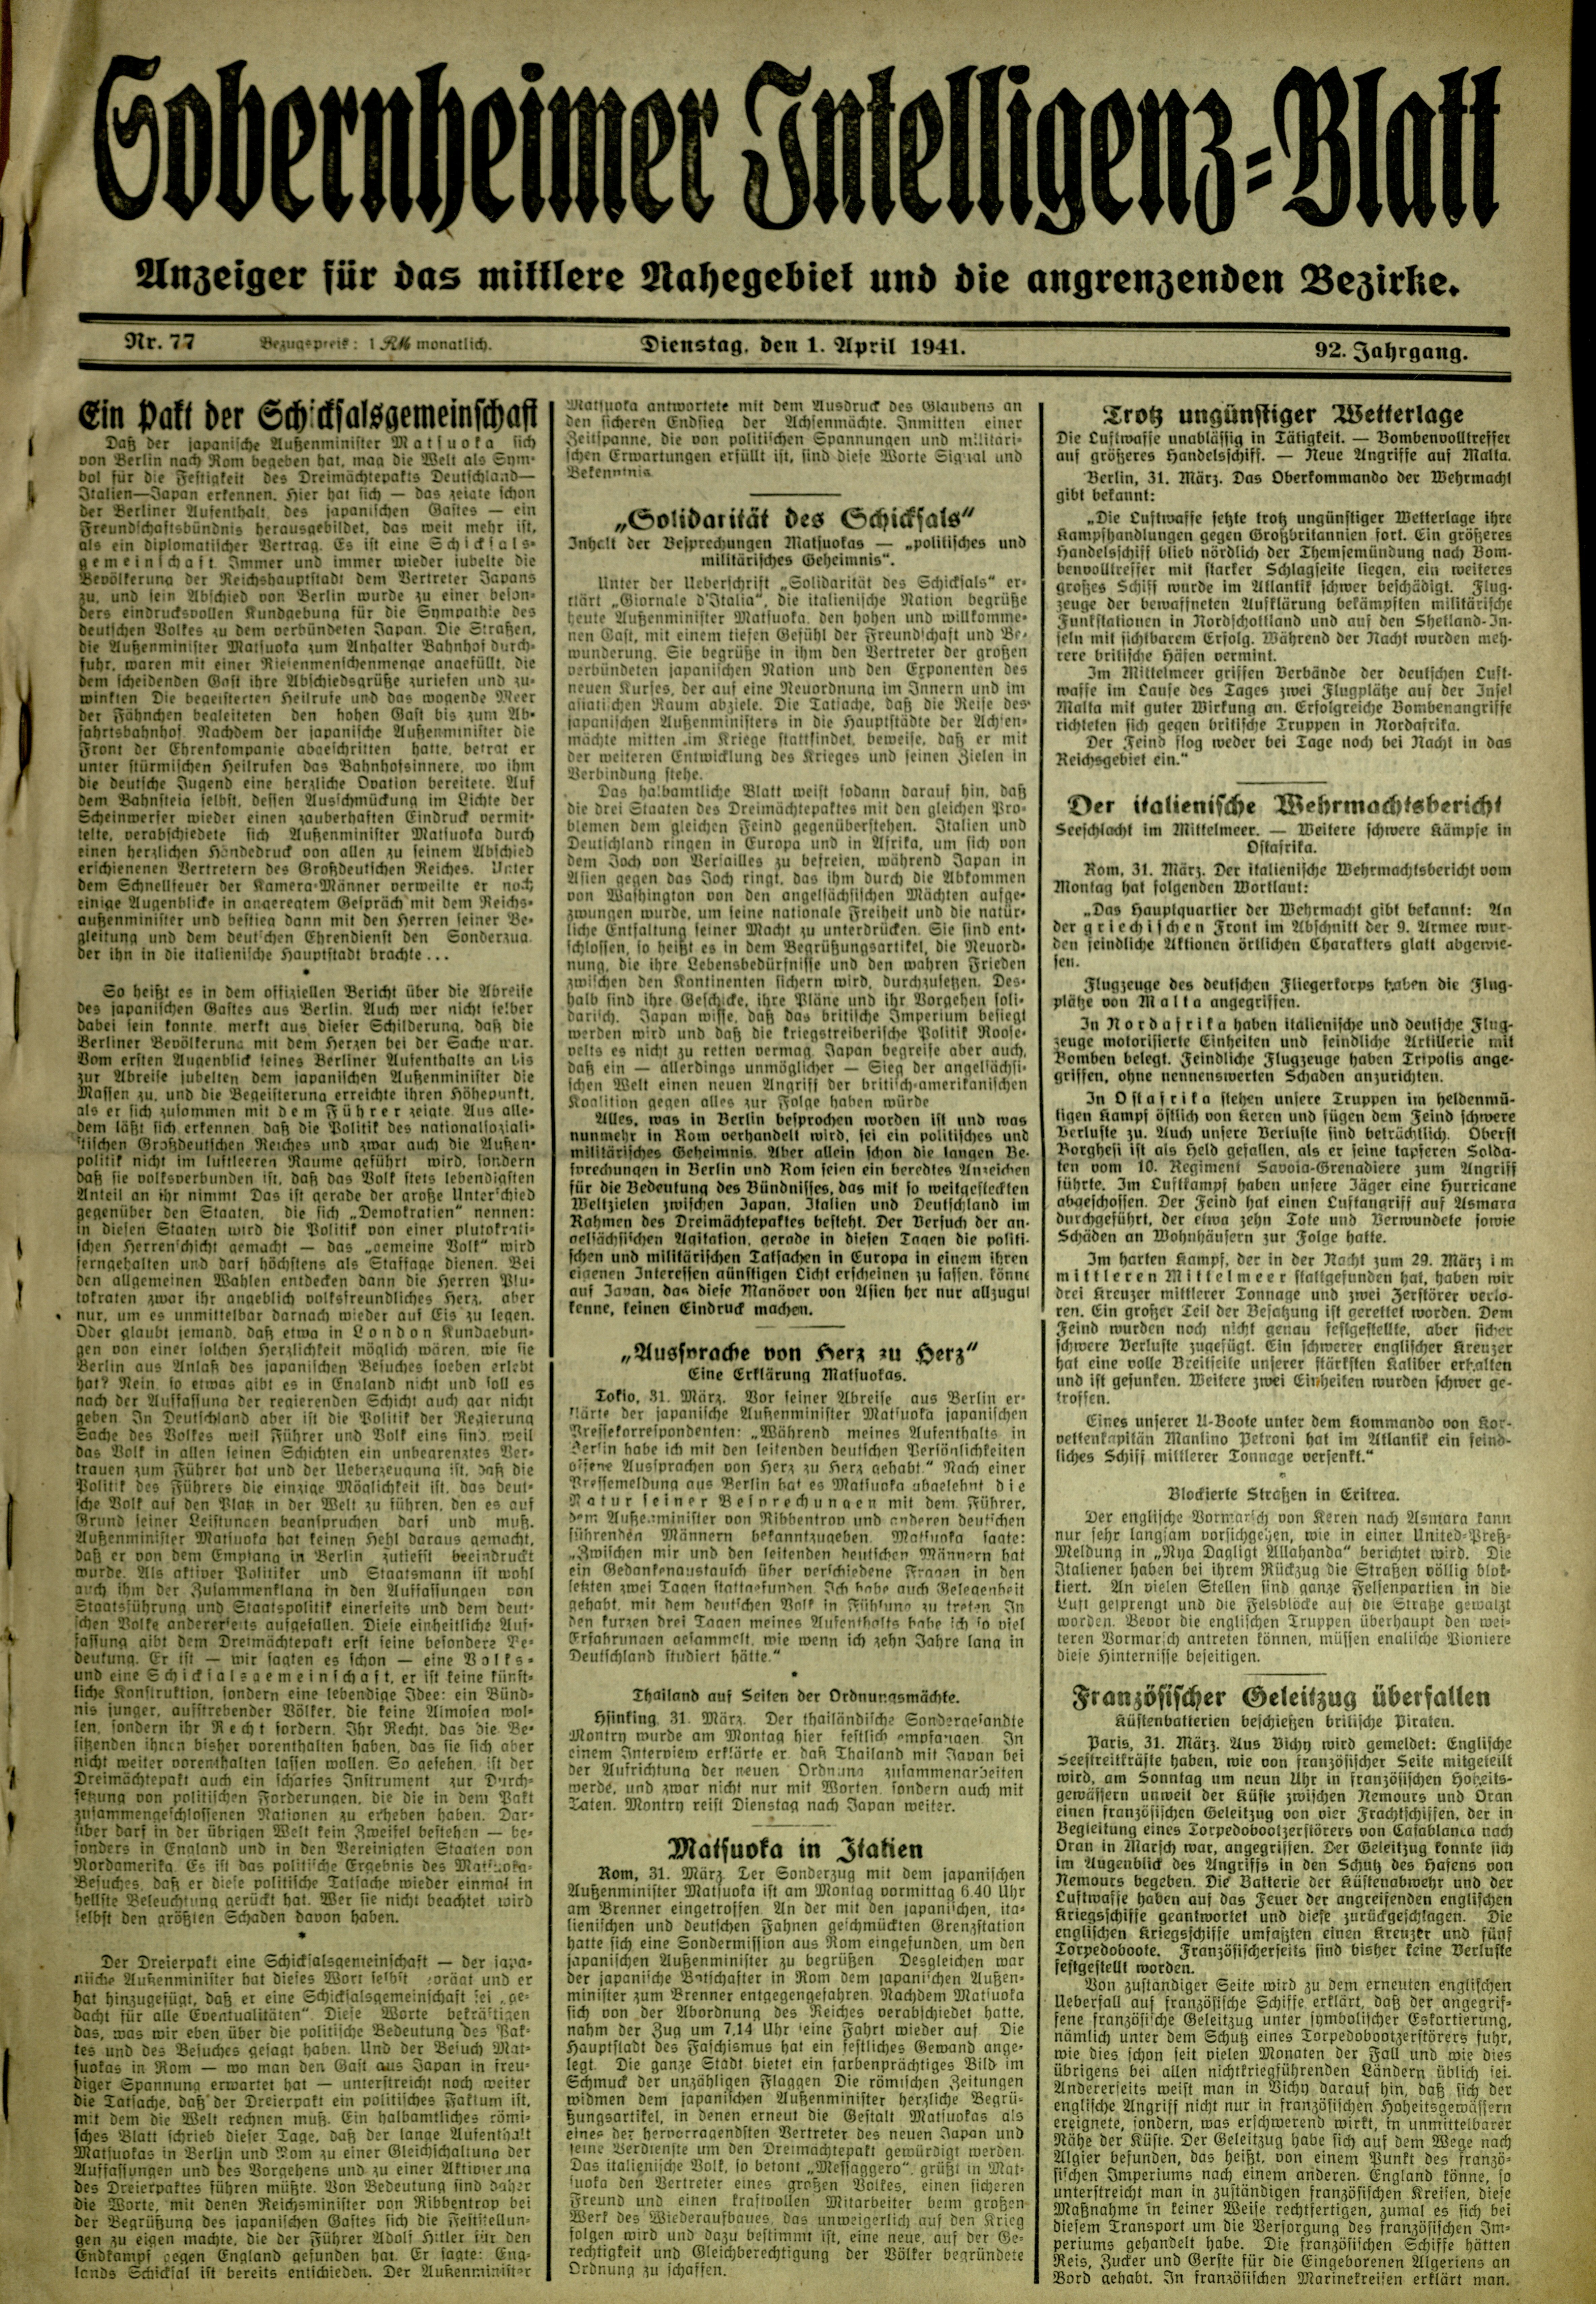 Zeitung: Sobernheimer Intelligenzblatt; April 1941, Jg. 92 Nr. 91 (Heimatmuseum Bad Sobernheim CC BY-NC-SA)